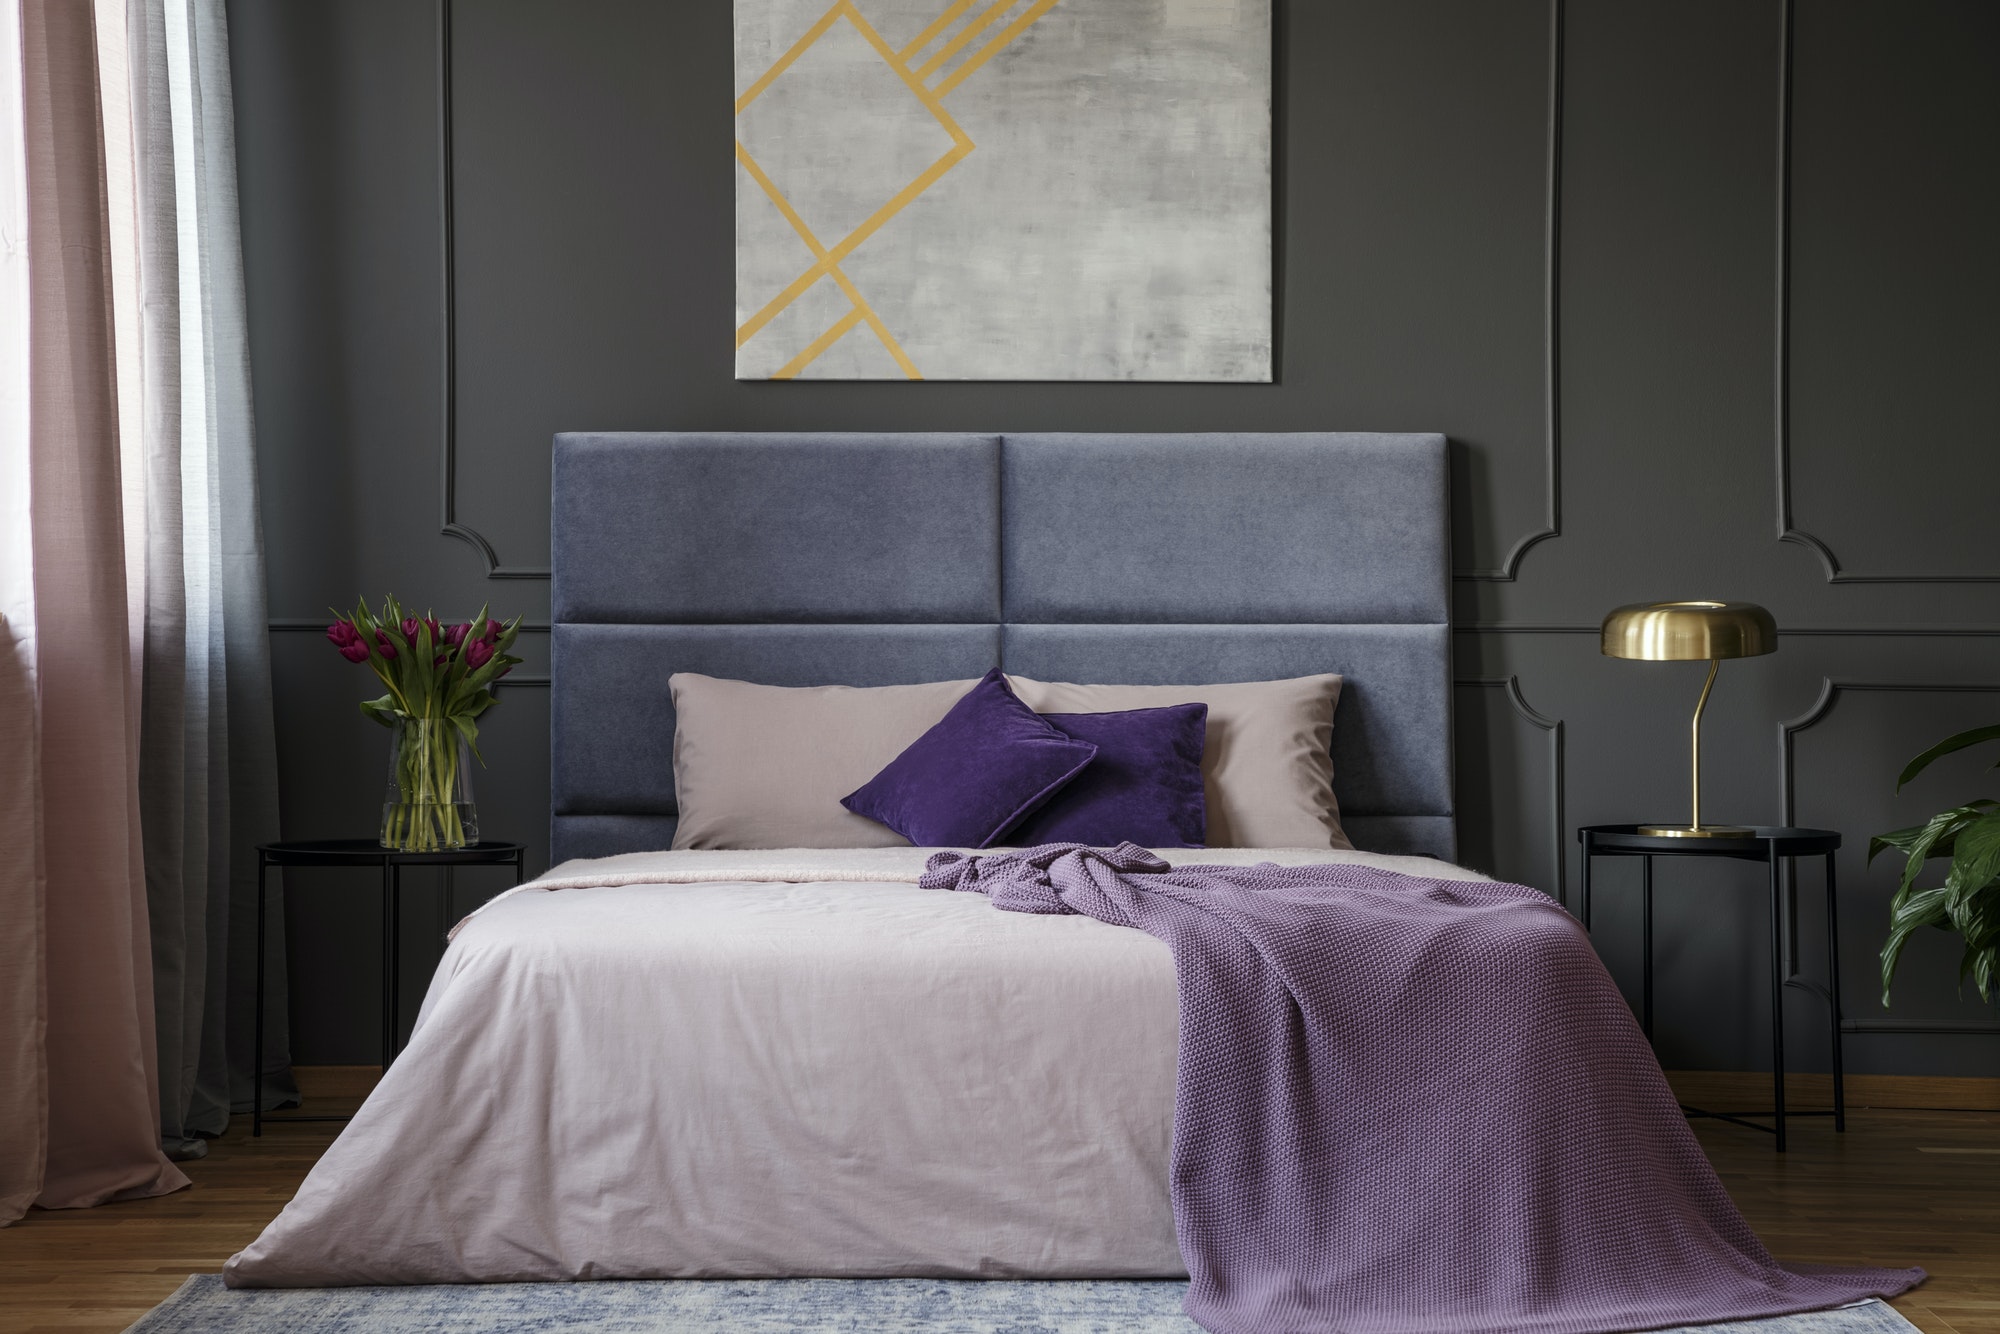 Violet elegant bedroom interior